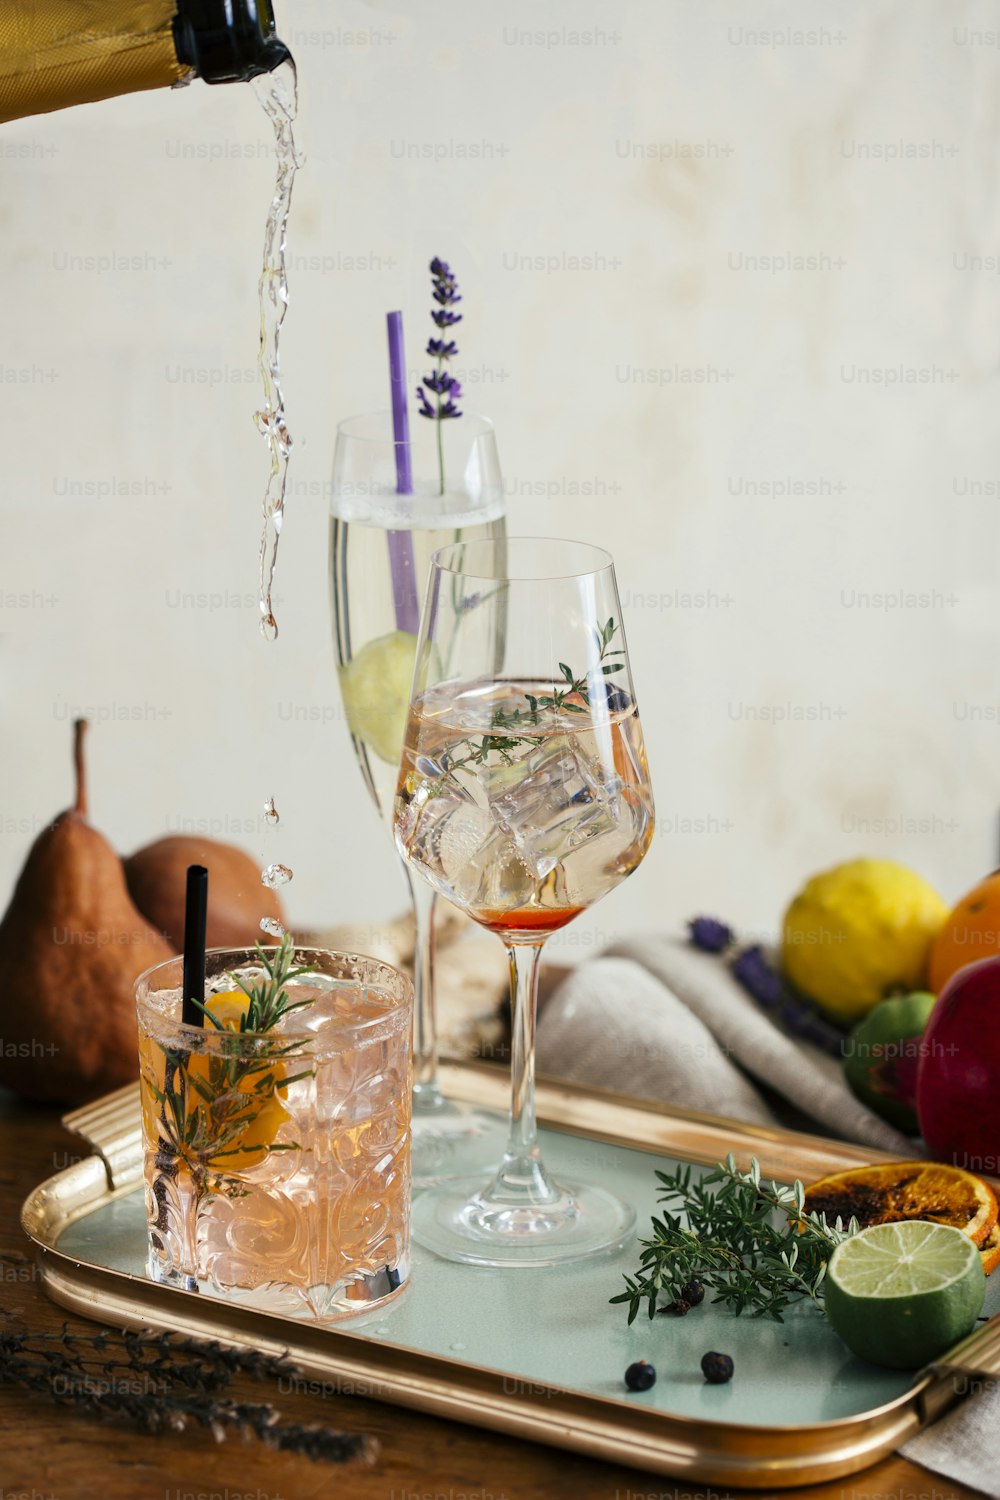 Prosecco-Cocktail, Aperitif mit Prosecco, einem weißen italienischen Schaumwein, Bitter, Thymian und Wacholderbeeren; Prosecco, Limette und Lavendel; und Prosecco, Orange und Rosmarin